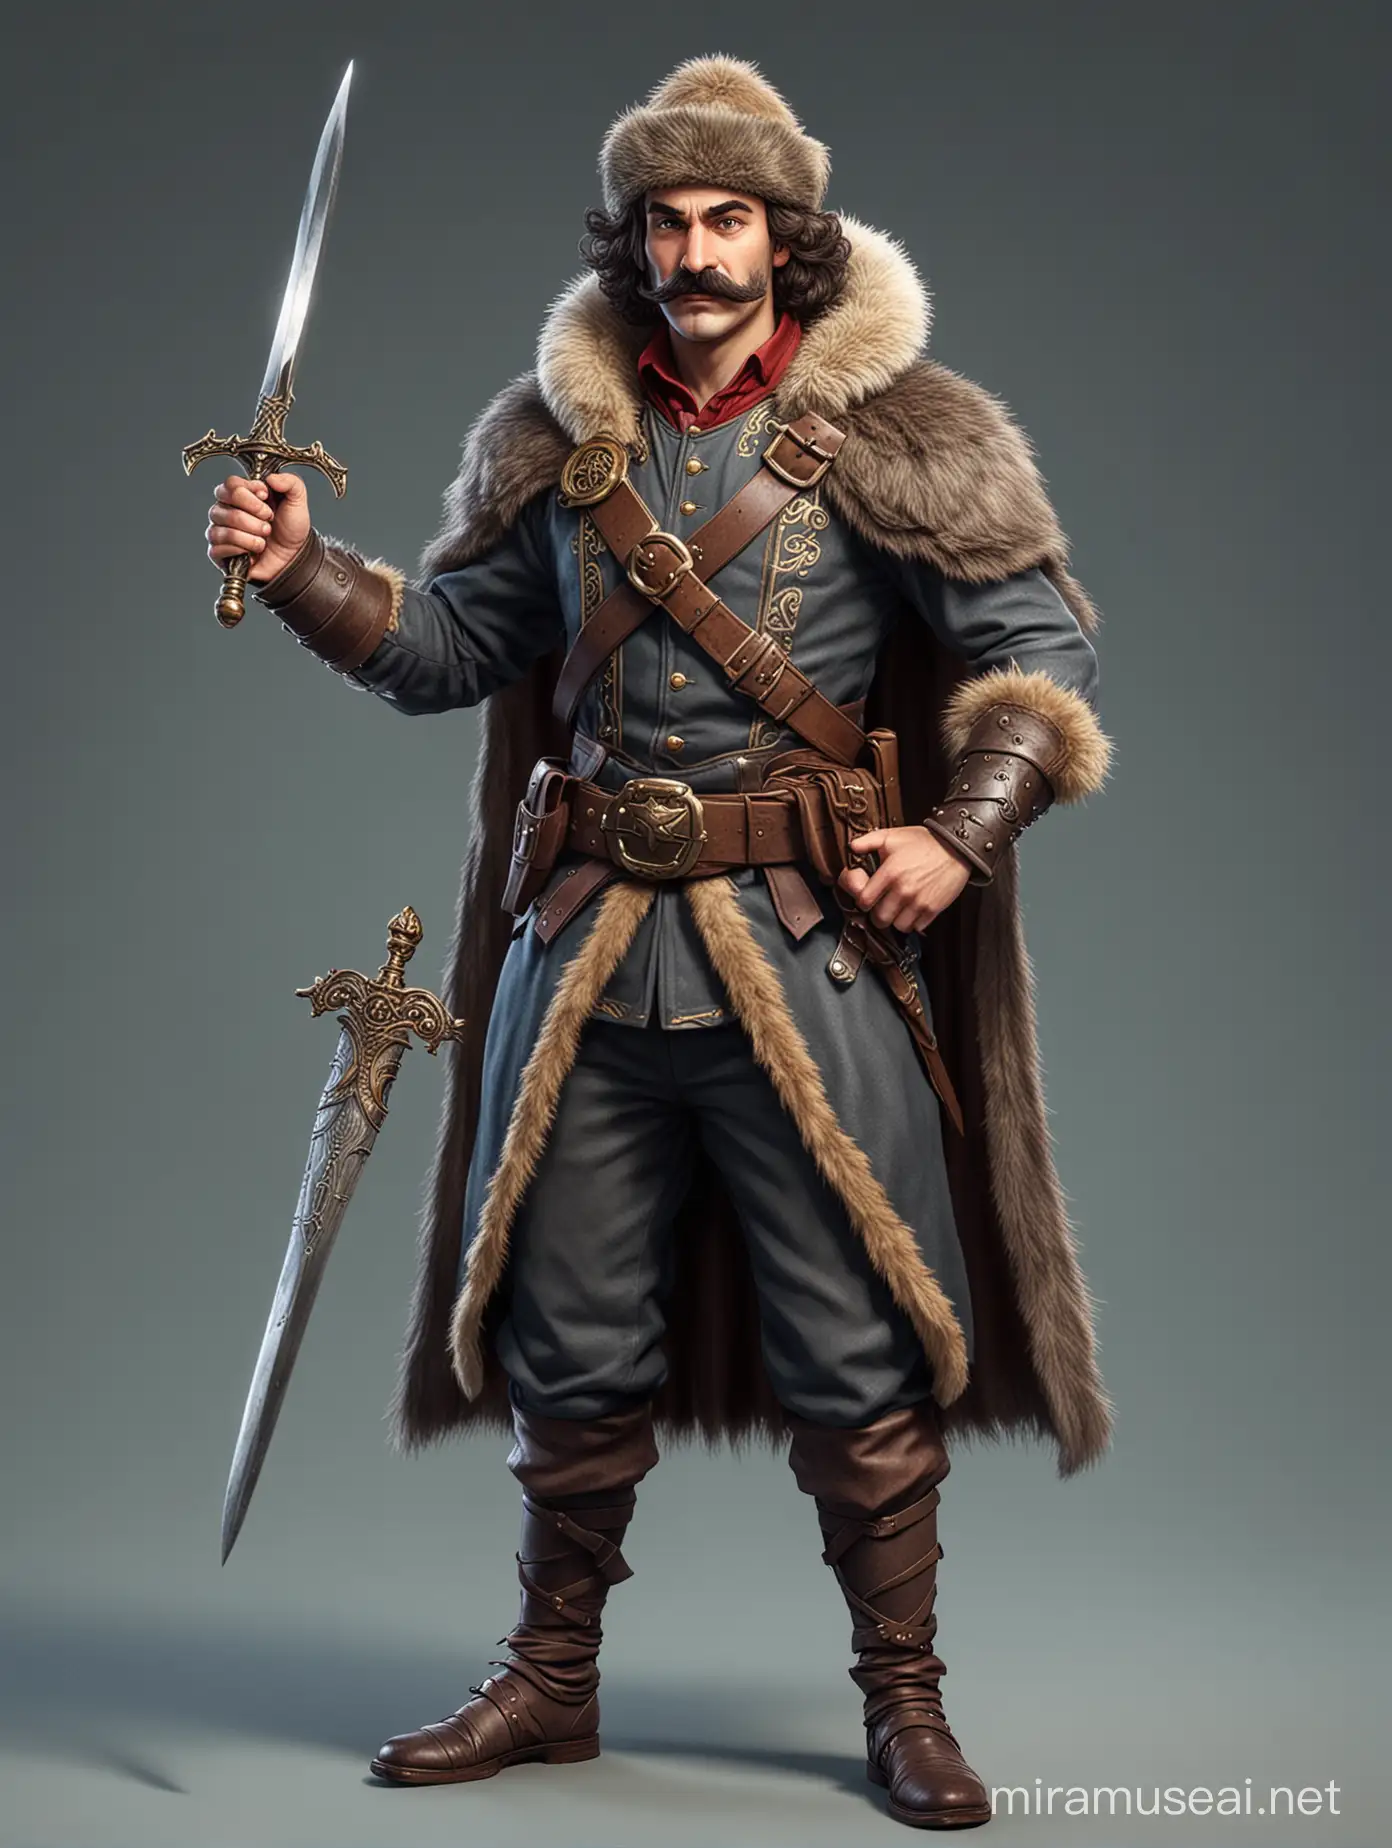 Mustachioed Nobleman in Fur Hat Brandishing Sword